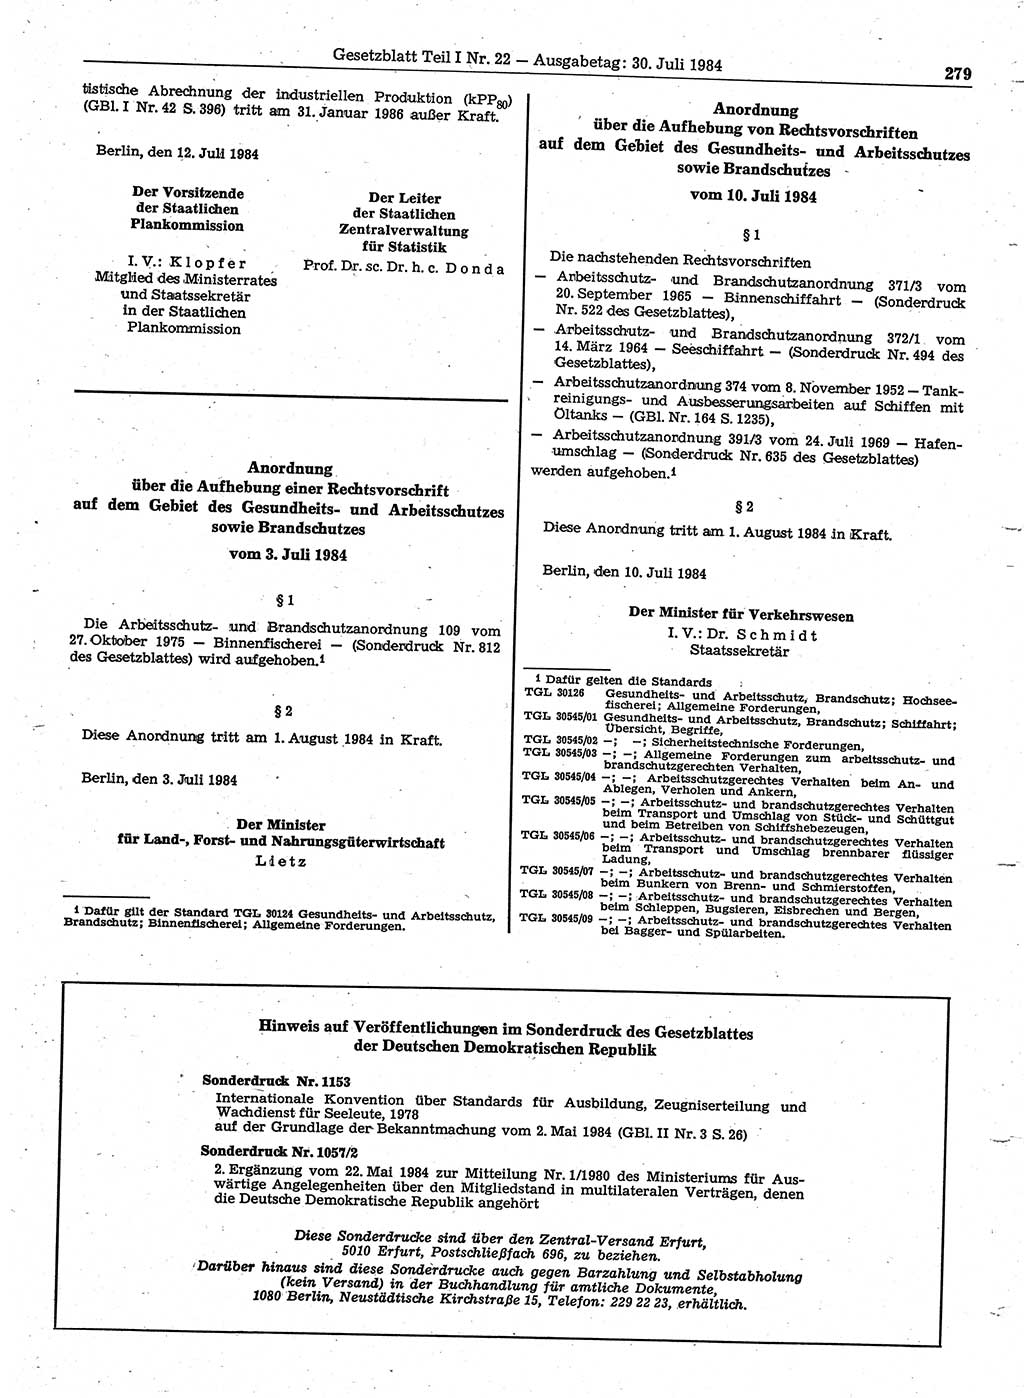 Gesetzblatt (GBl.) der Deutschen Demokratischen Republik (DDR) Teil Ⅰ 1984, Seite 279 (GBl. DDR Ⅰ 1984, S. 279)